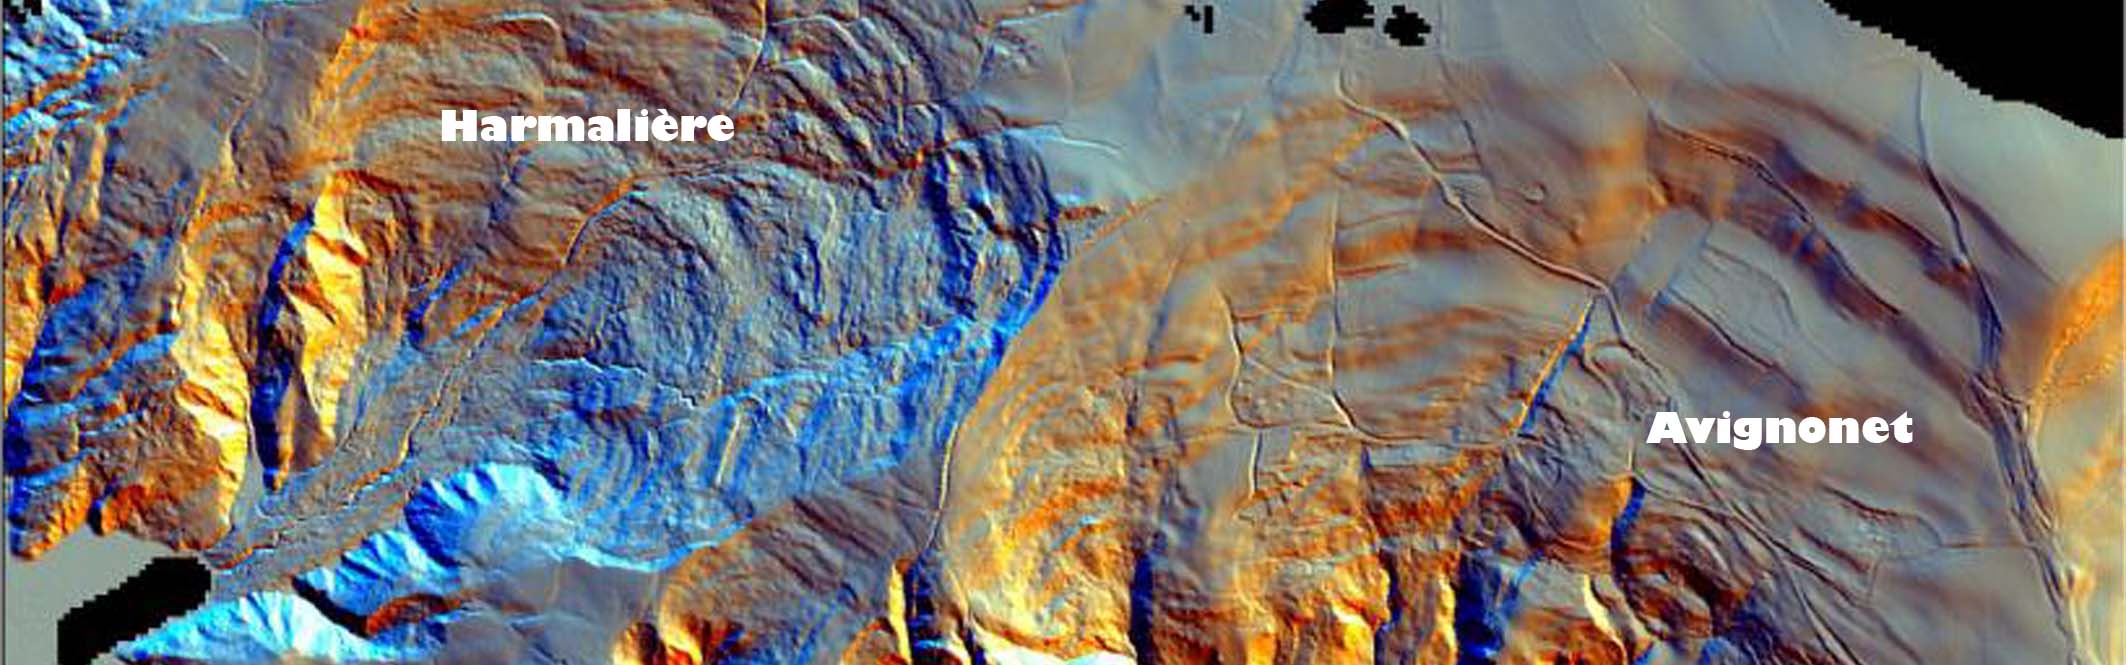 Avignonet/Harmalière landslides: airborne LiDAR view of the landslide morphology in 2007 